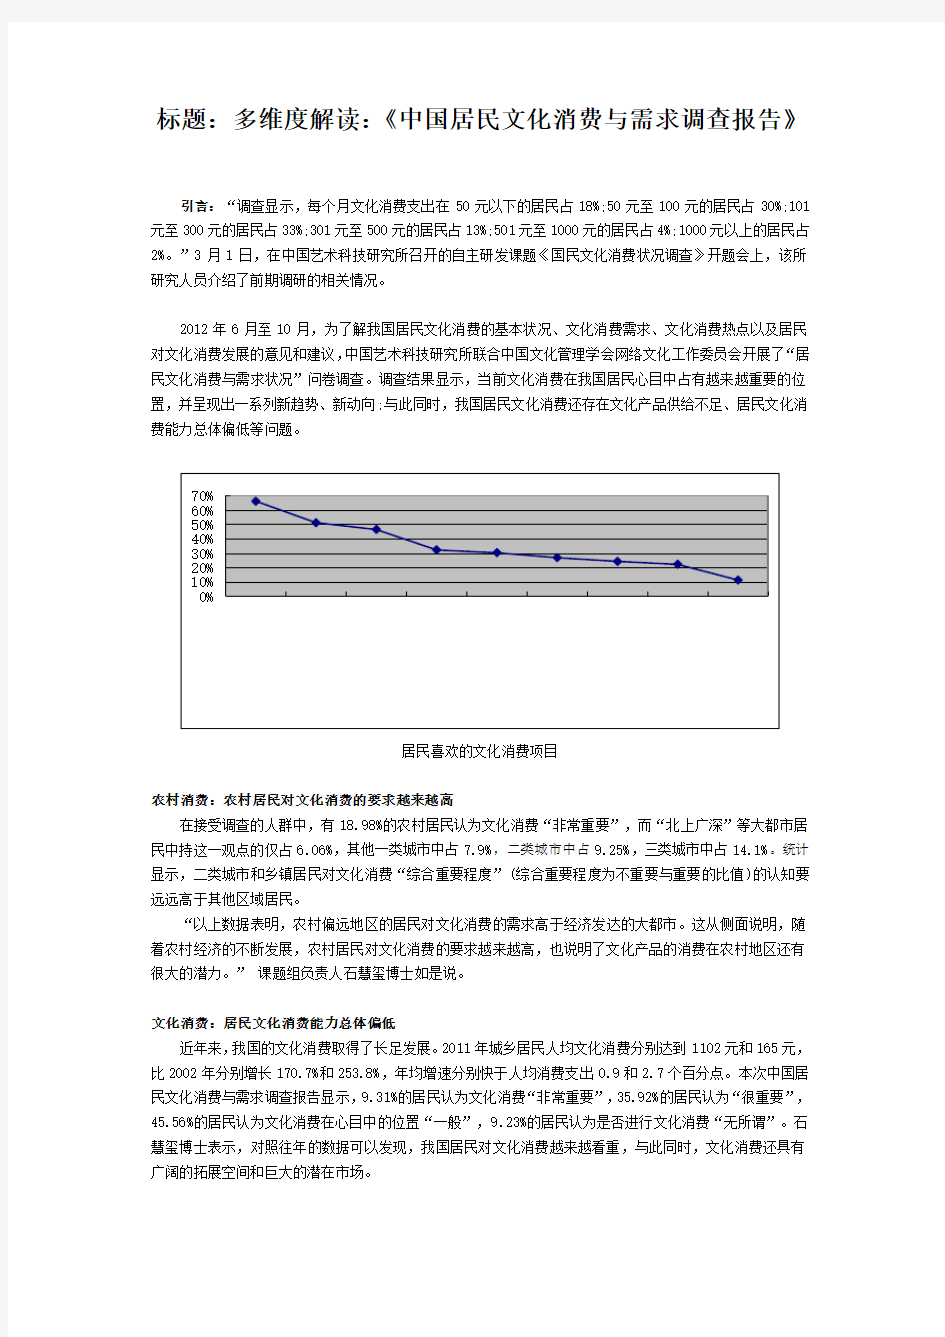 《中国居民文化消费与需求调查报告》